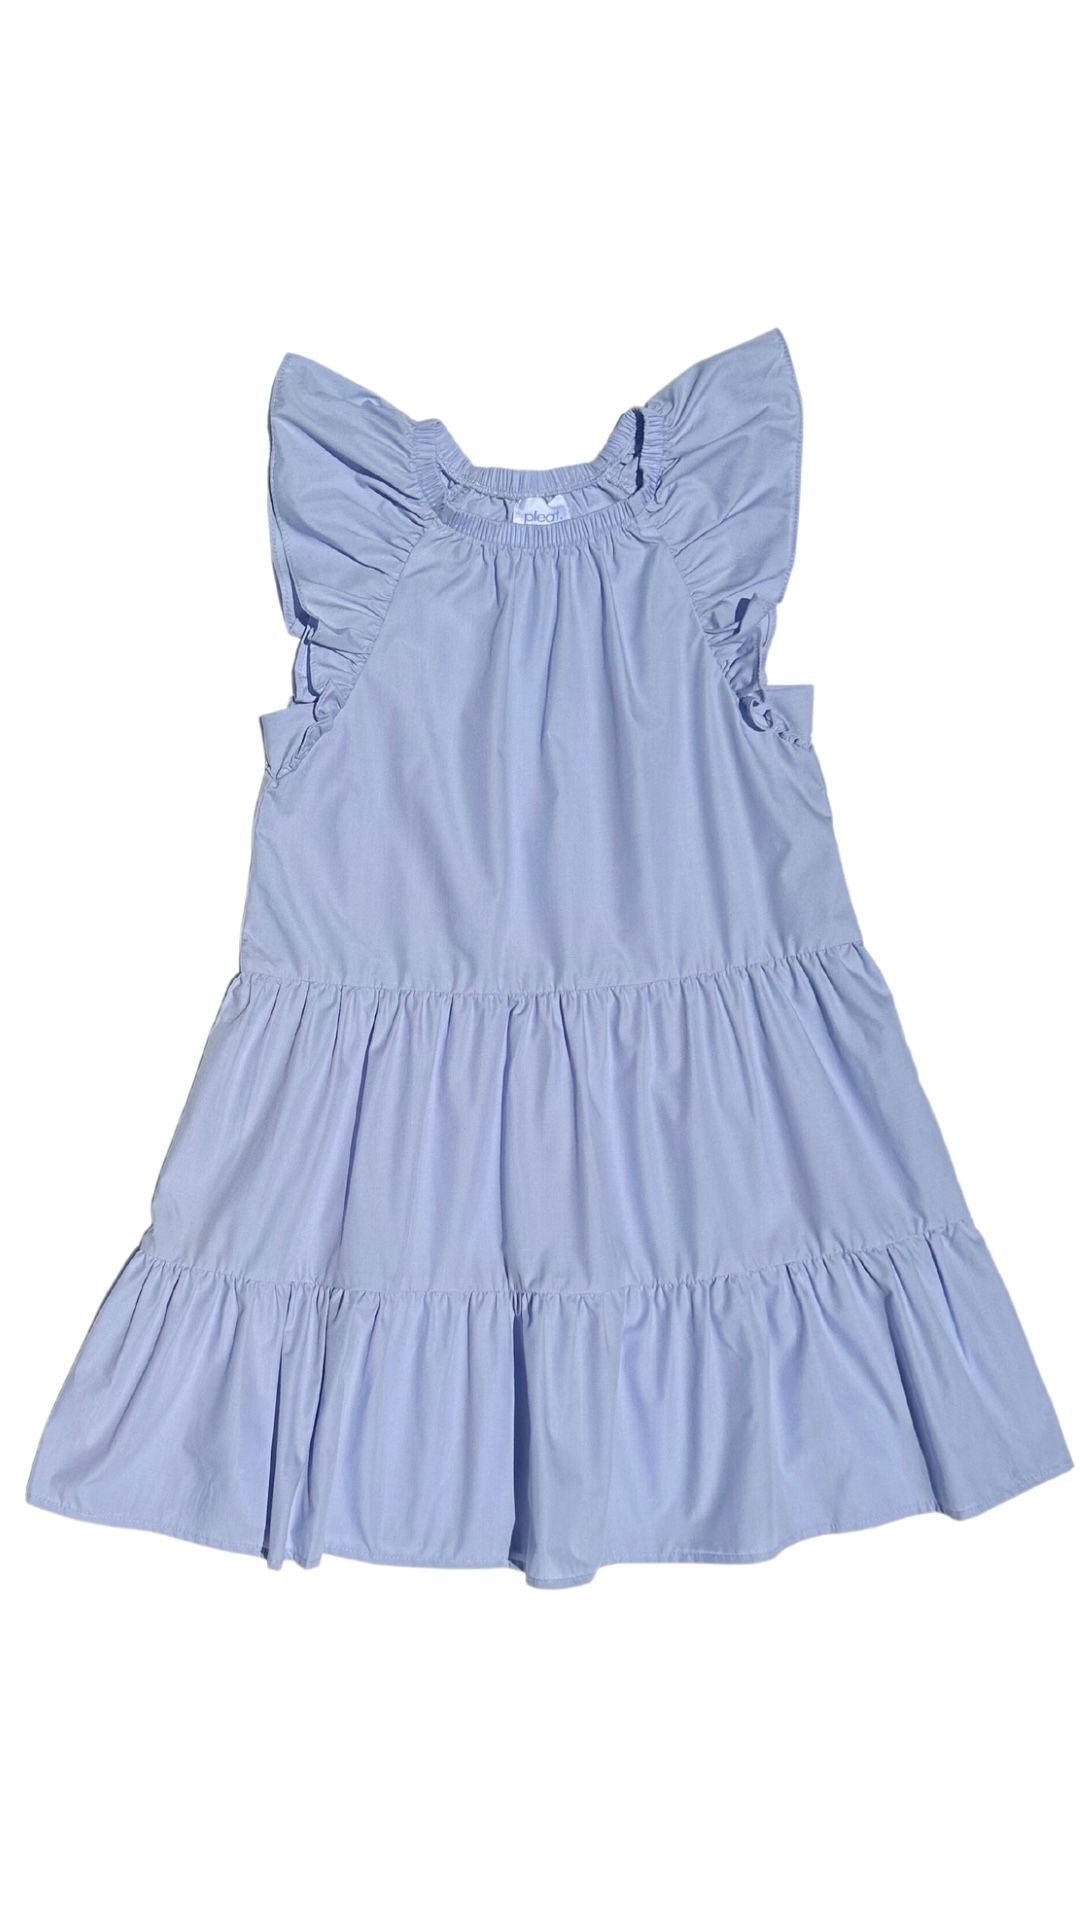 Pleat Layla Dress in Pastel Blue